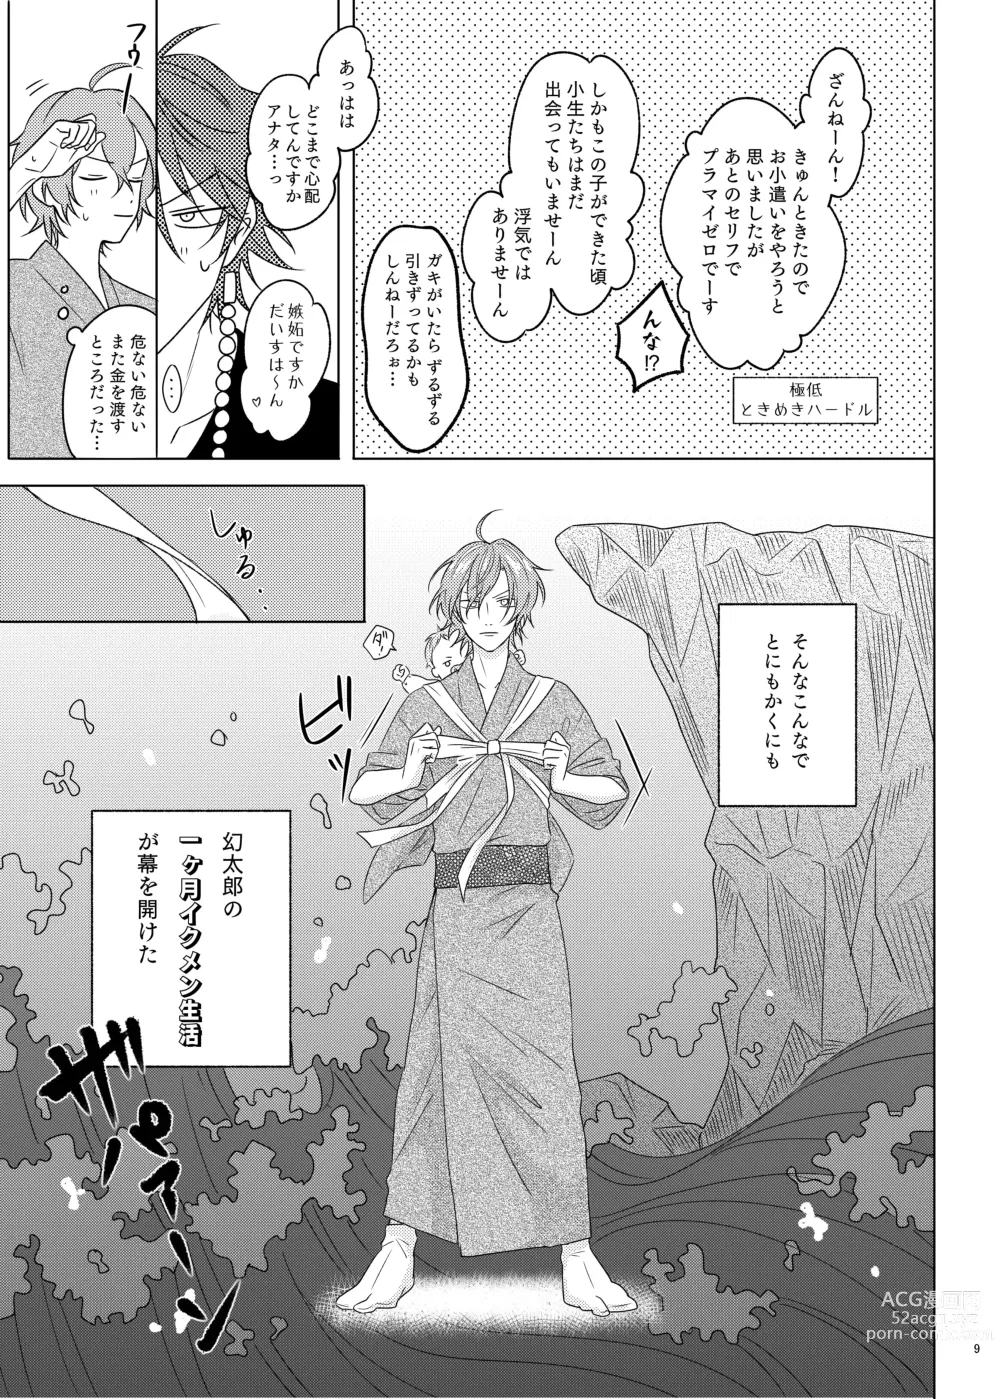 Page 9 of doujinshi Kami sama no ko